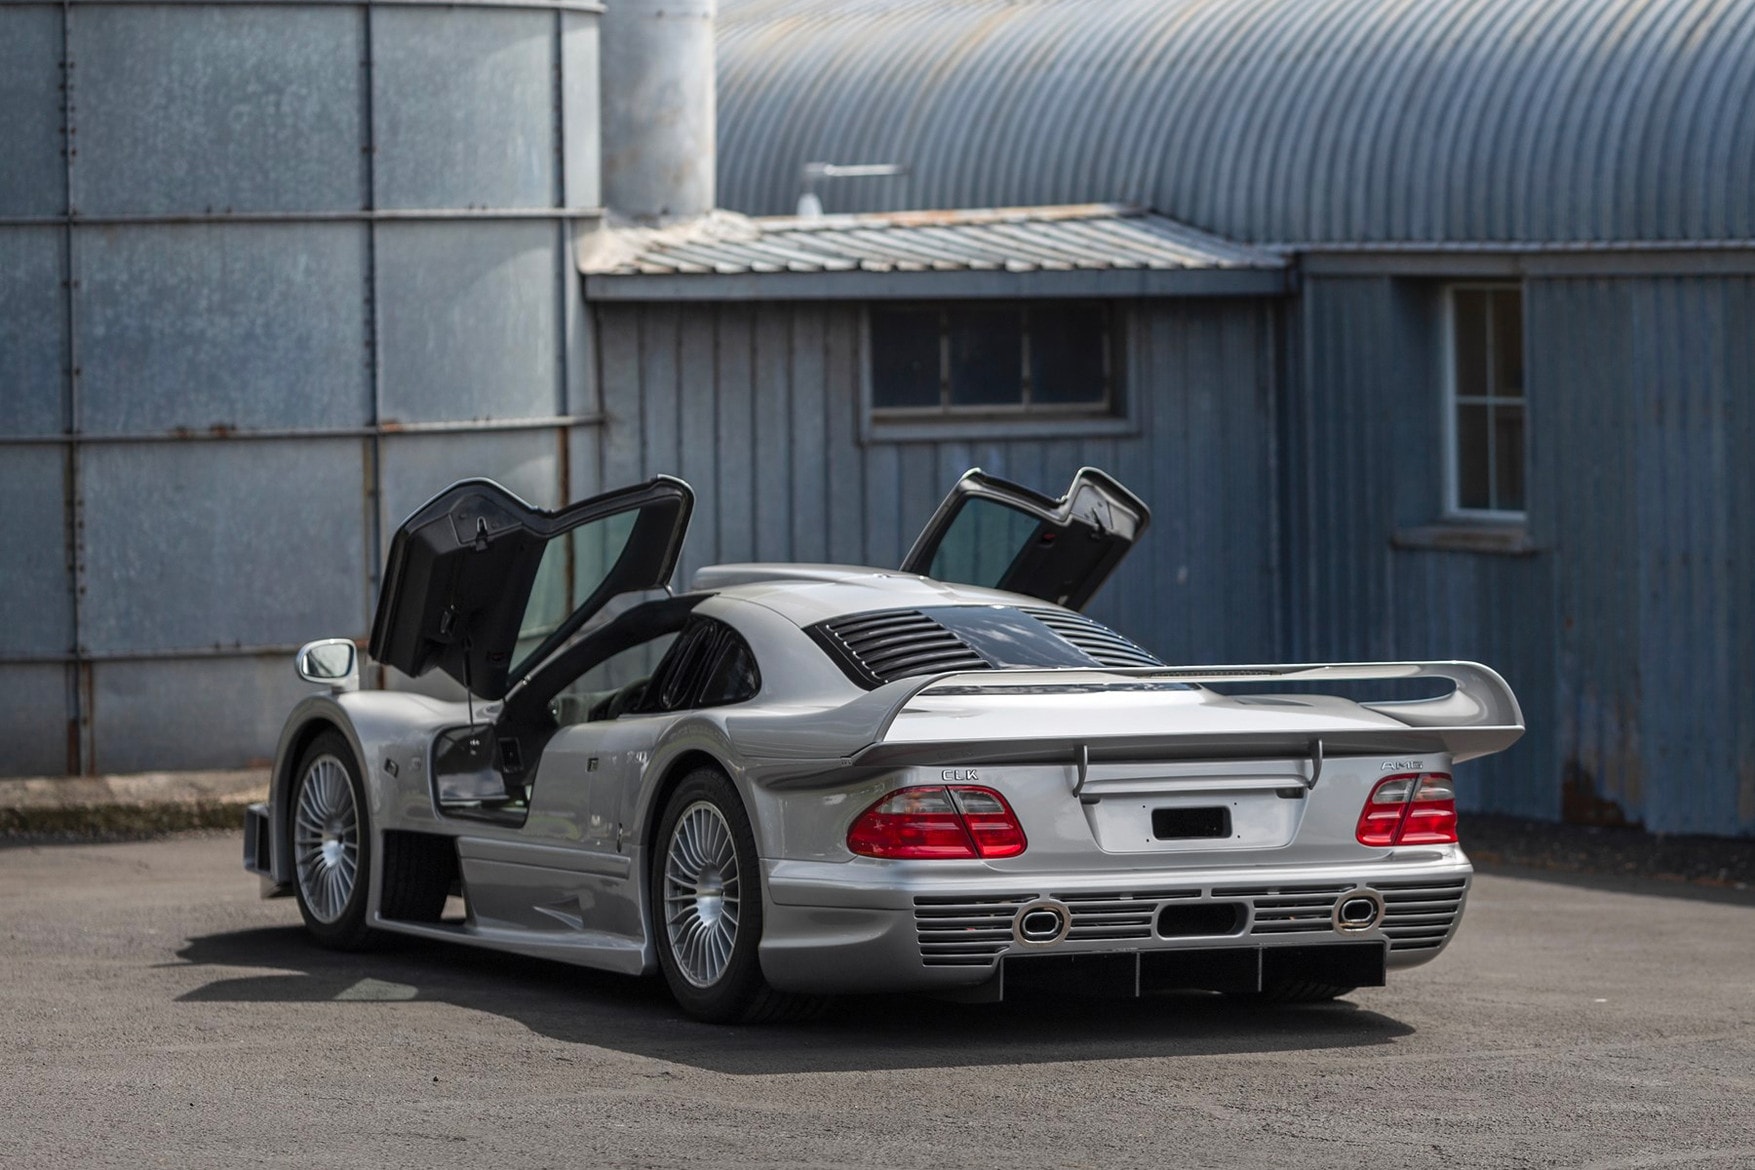 1998 年產 Mercedes-Benz AMG CLK GTR 跑車將公開拍賣